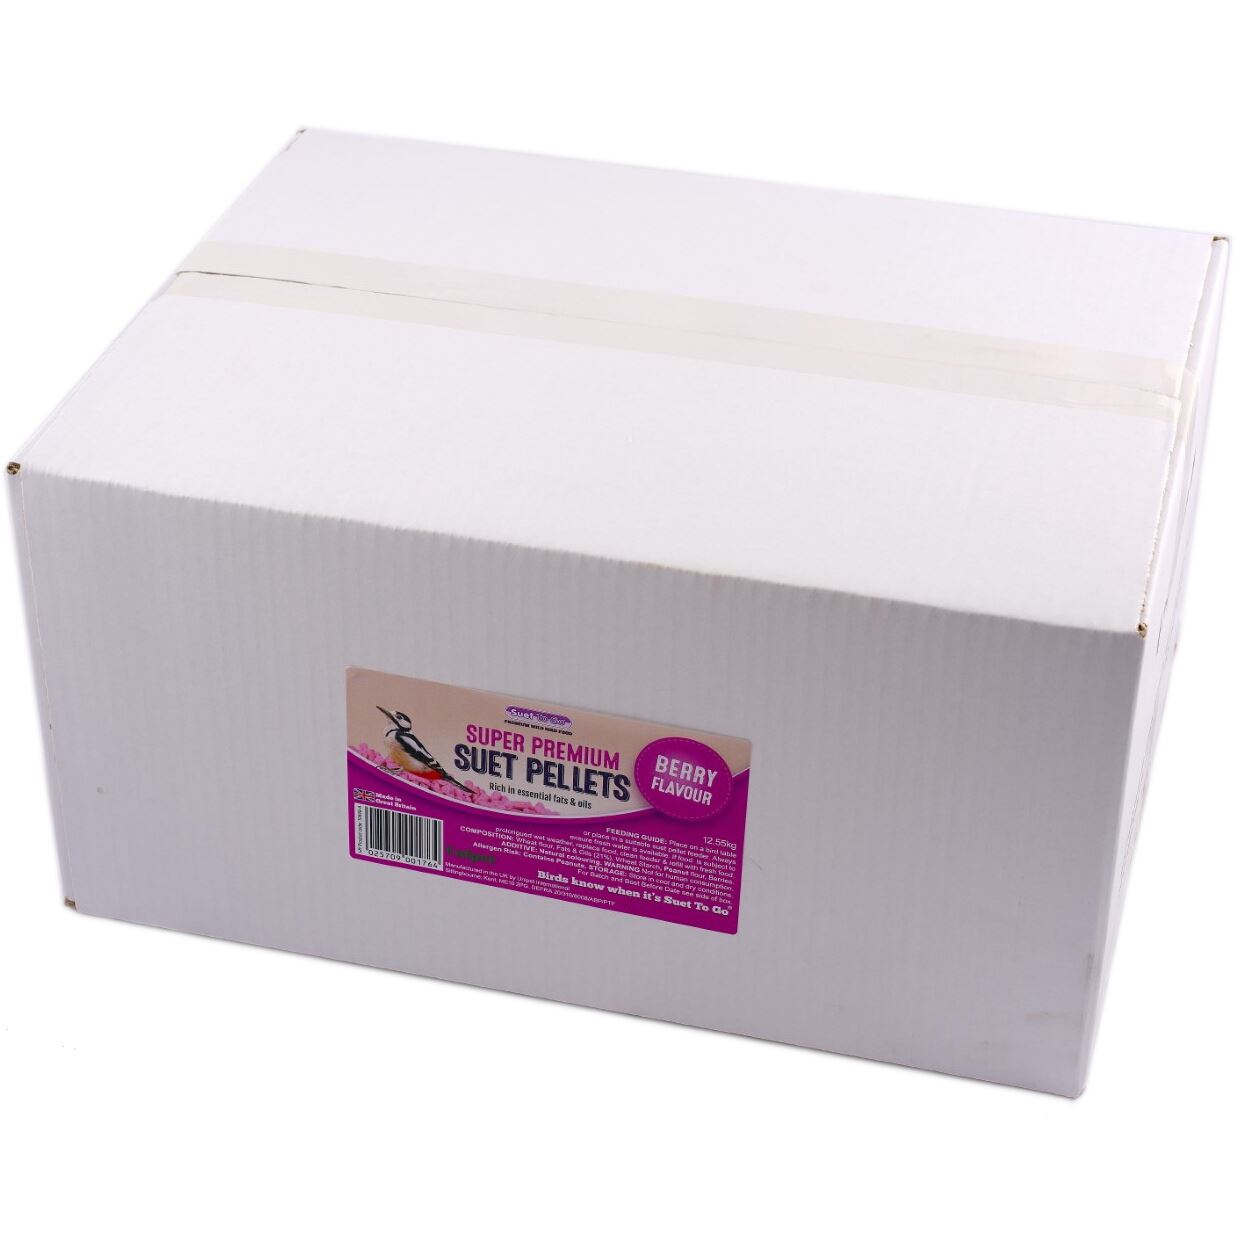 Suet To Go - Suet Pellets Berry, 12.55kg Box